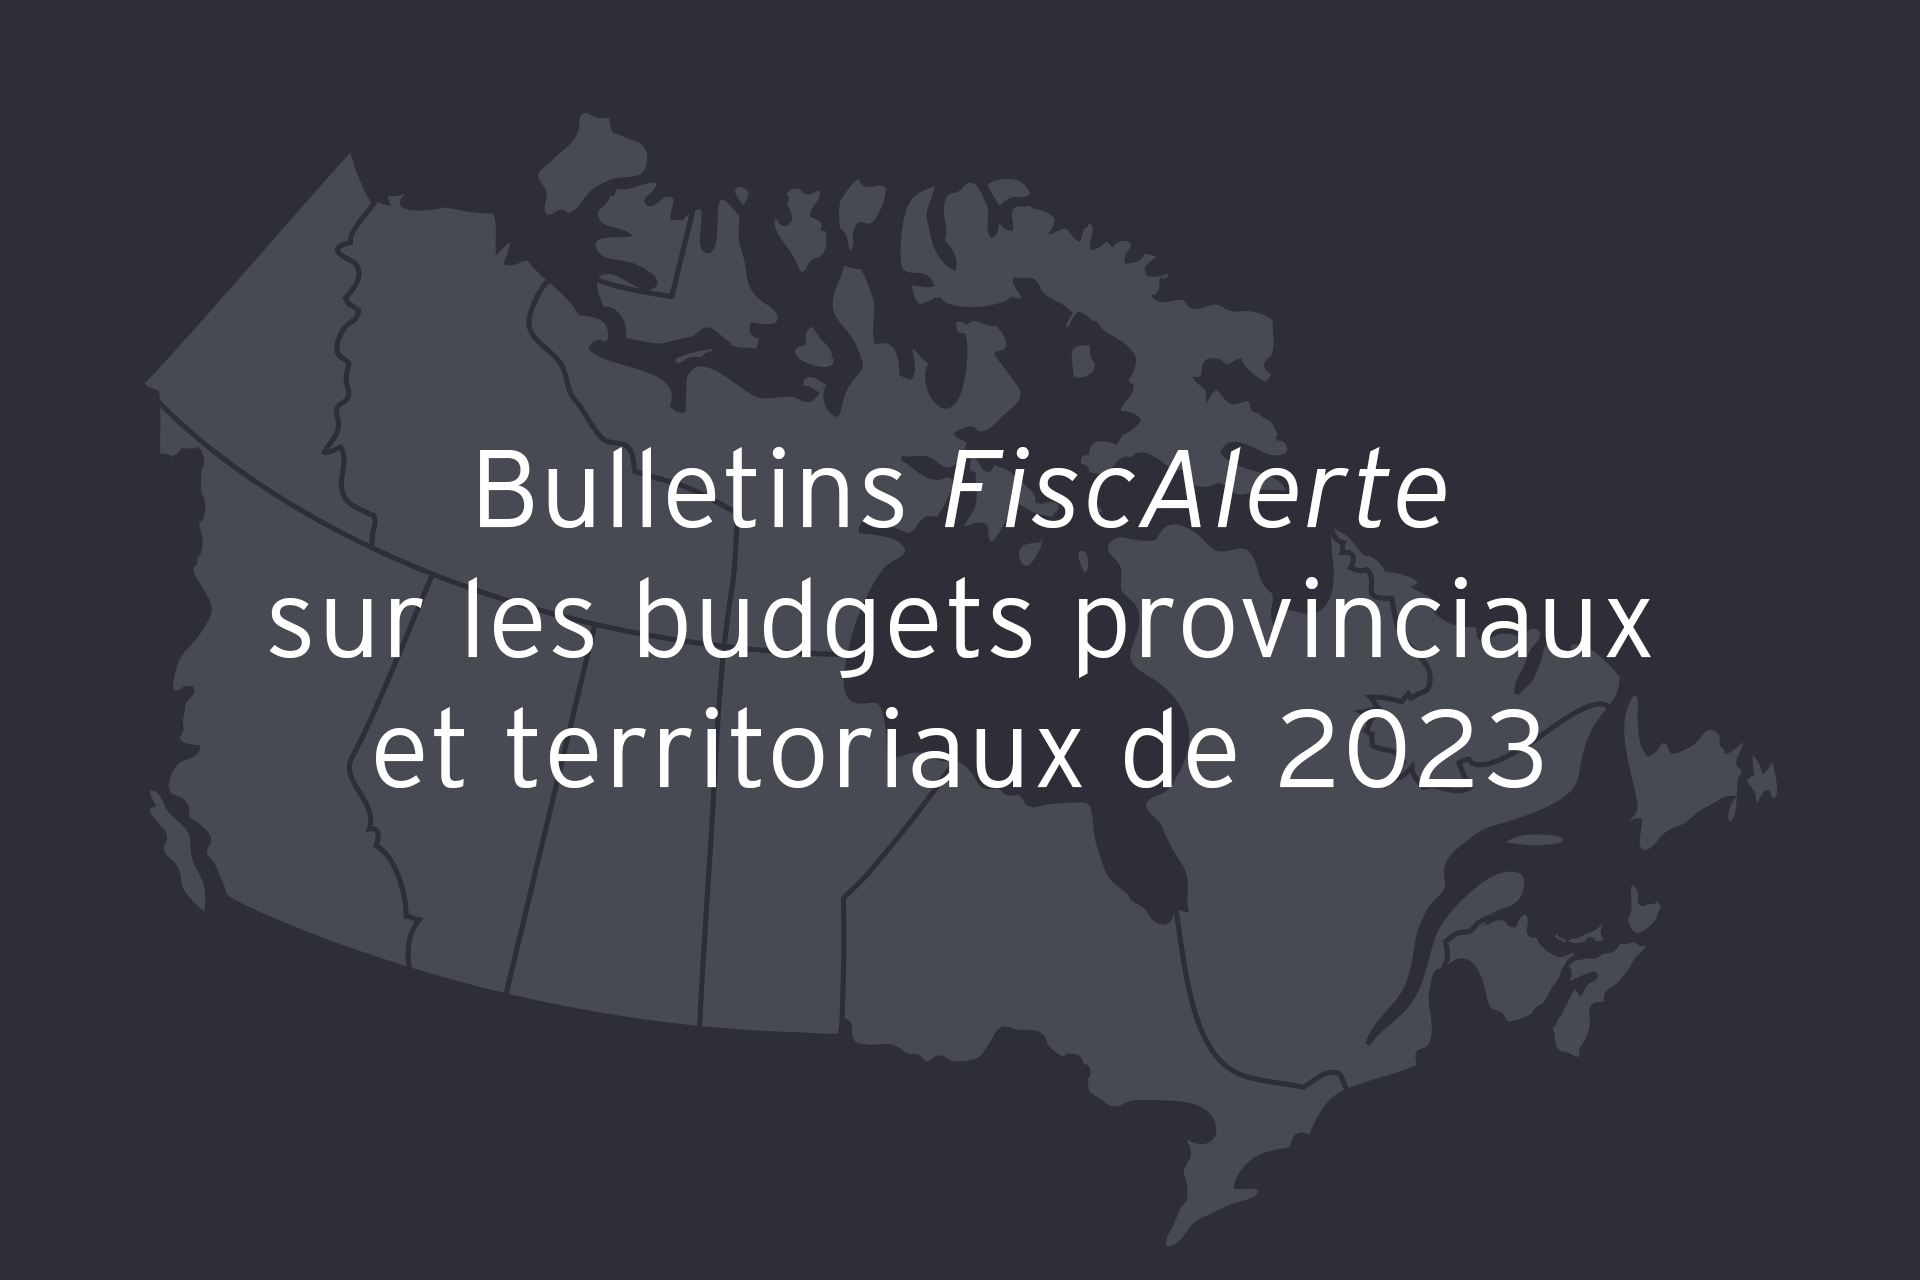 Bulletins FiscAlerte sur les budgets provinciaux et territoriaux de 2023